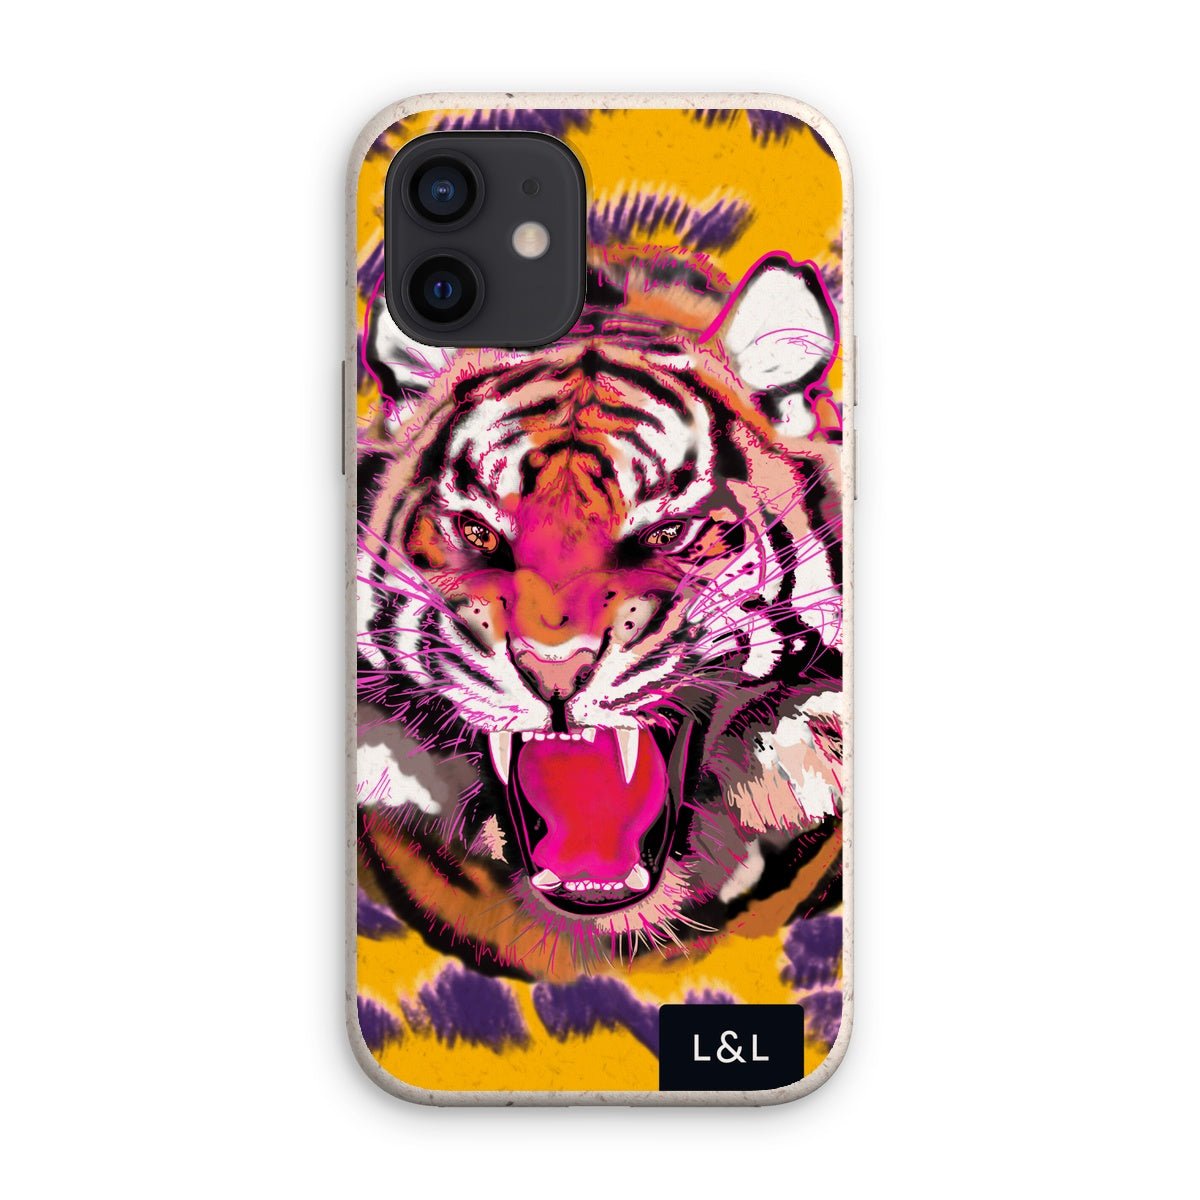 Neon Tiger Eco Phone Case - Loam & Lore